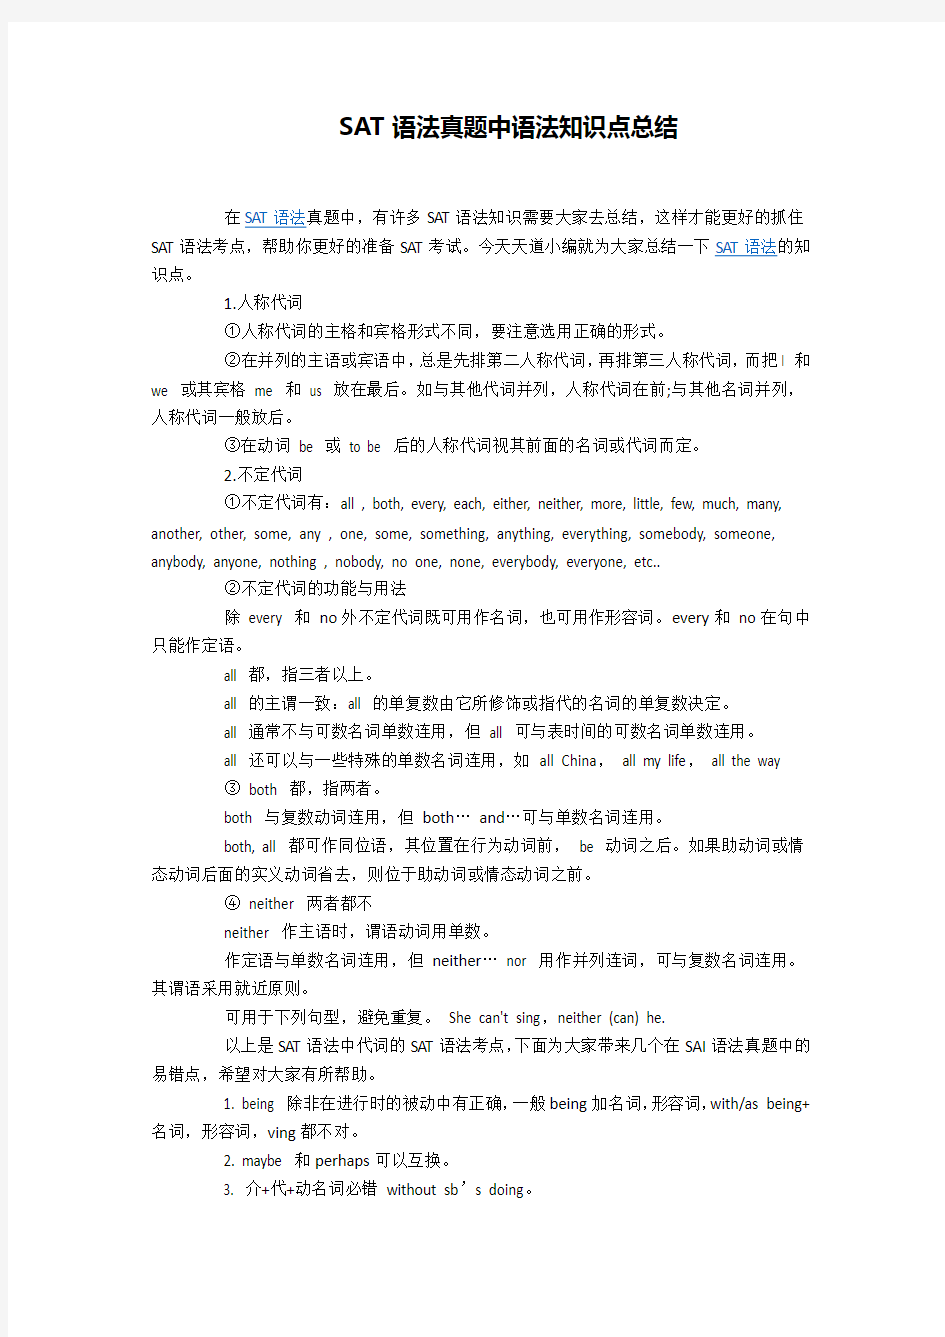 SAT语法真题中语法知识点总结